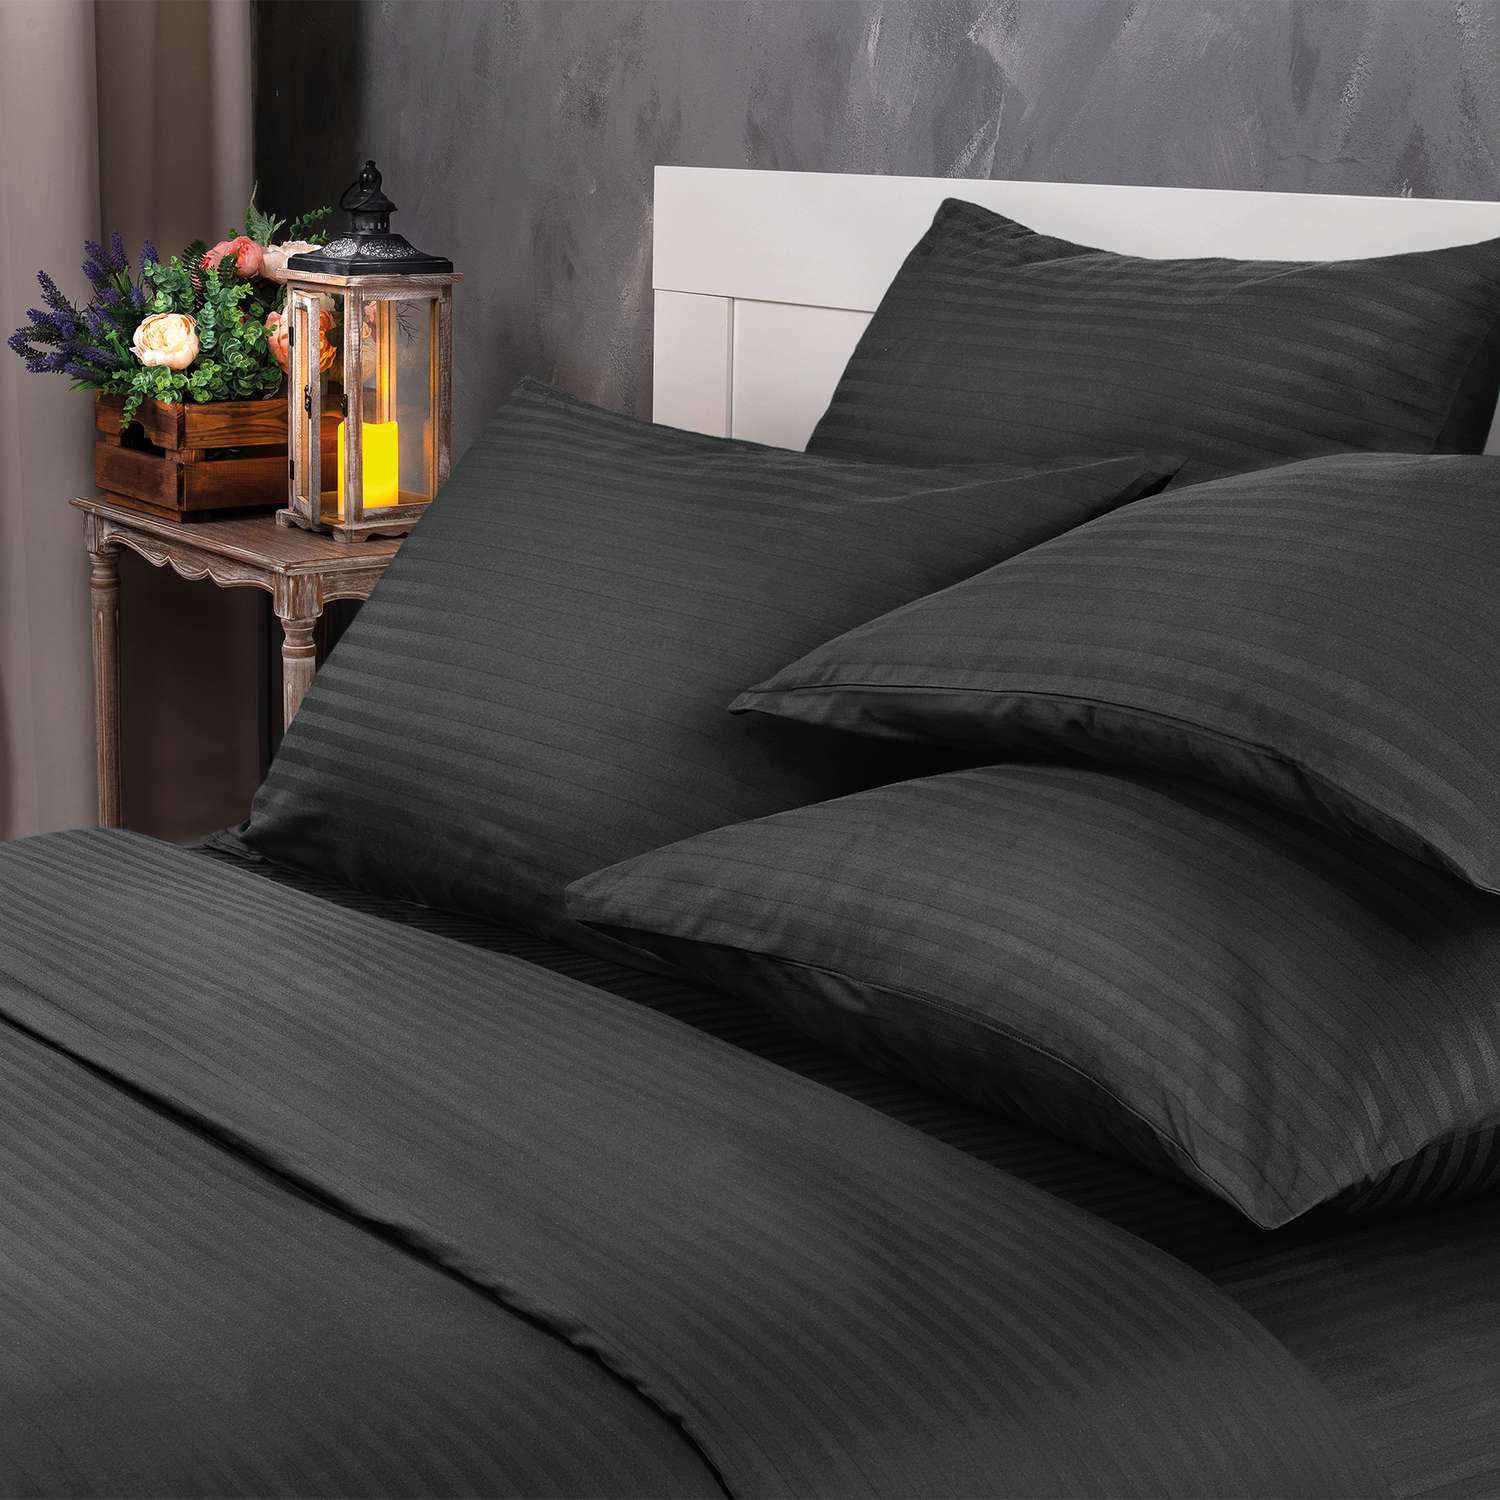 Комплект постельного белья Verossa 1.5СП Black страйп-сатин наволочки 50х70см 100% хлопок - фото 2